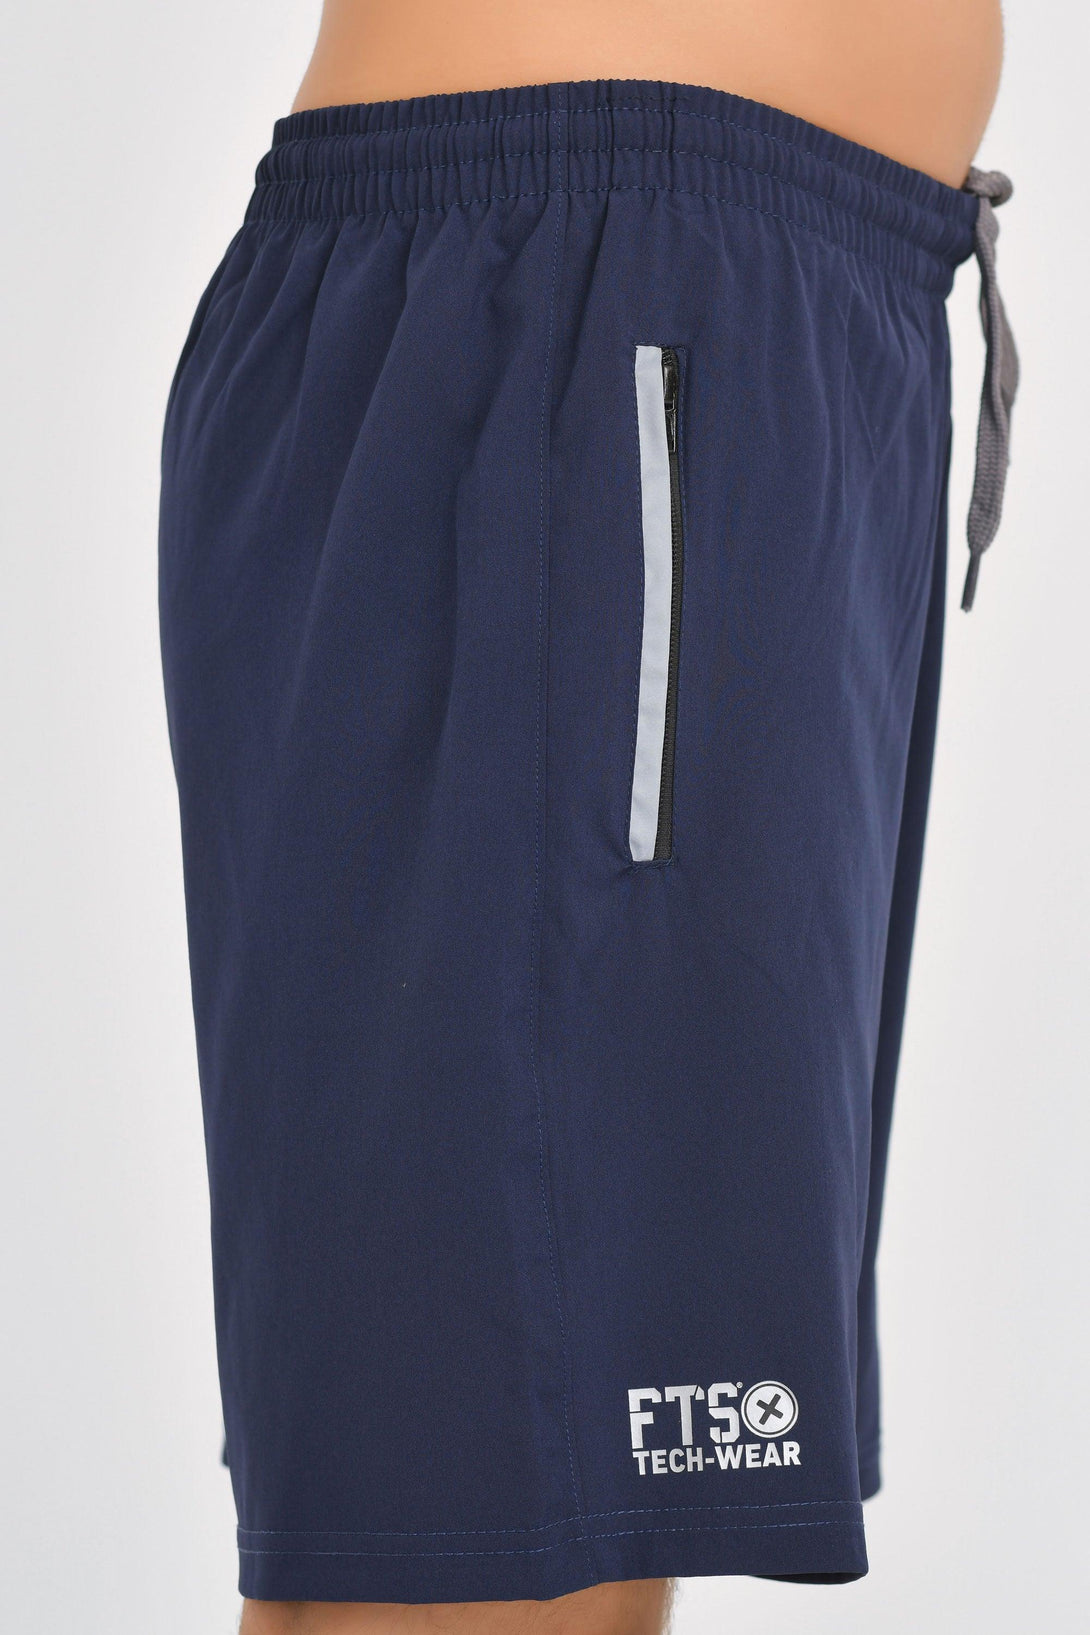 Shorts 100% Polyester NAVY - GREY MELANGE - Pack of 2 - FTS